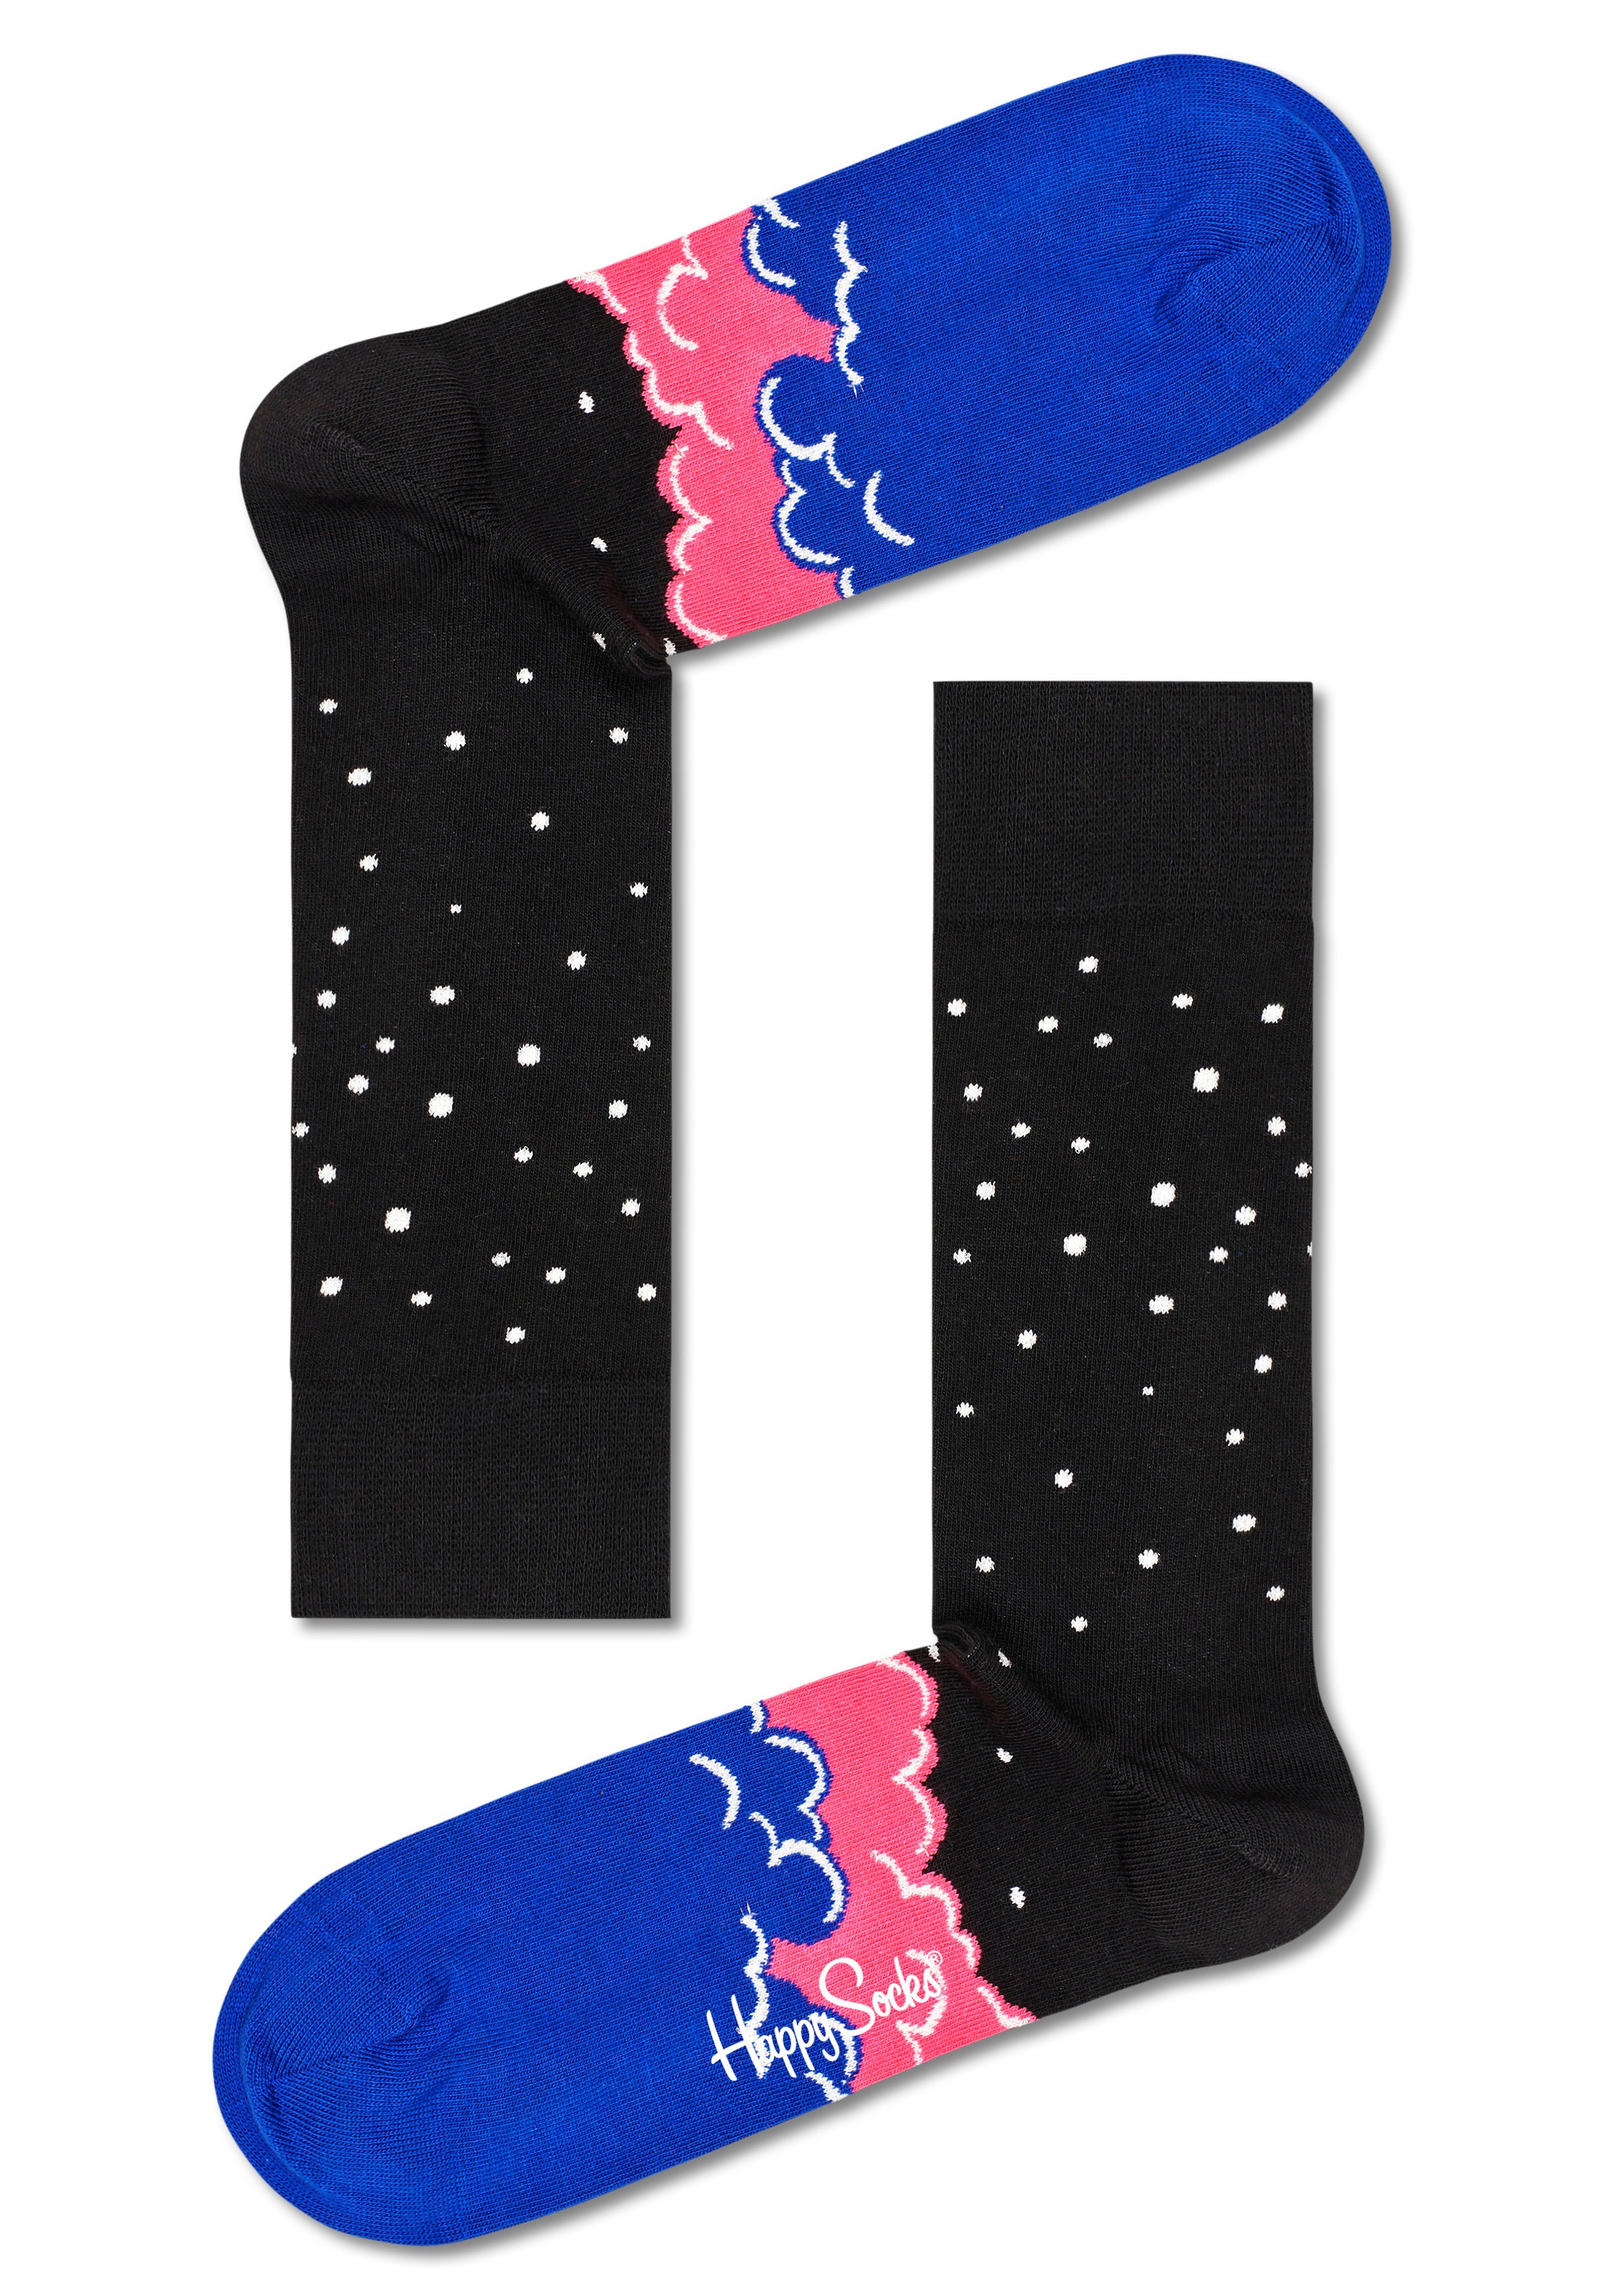 OTTO Shop Socken, Happy im Paar), (3 mit verschiedenen bestellen Online Weltraummotiven Socks